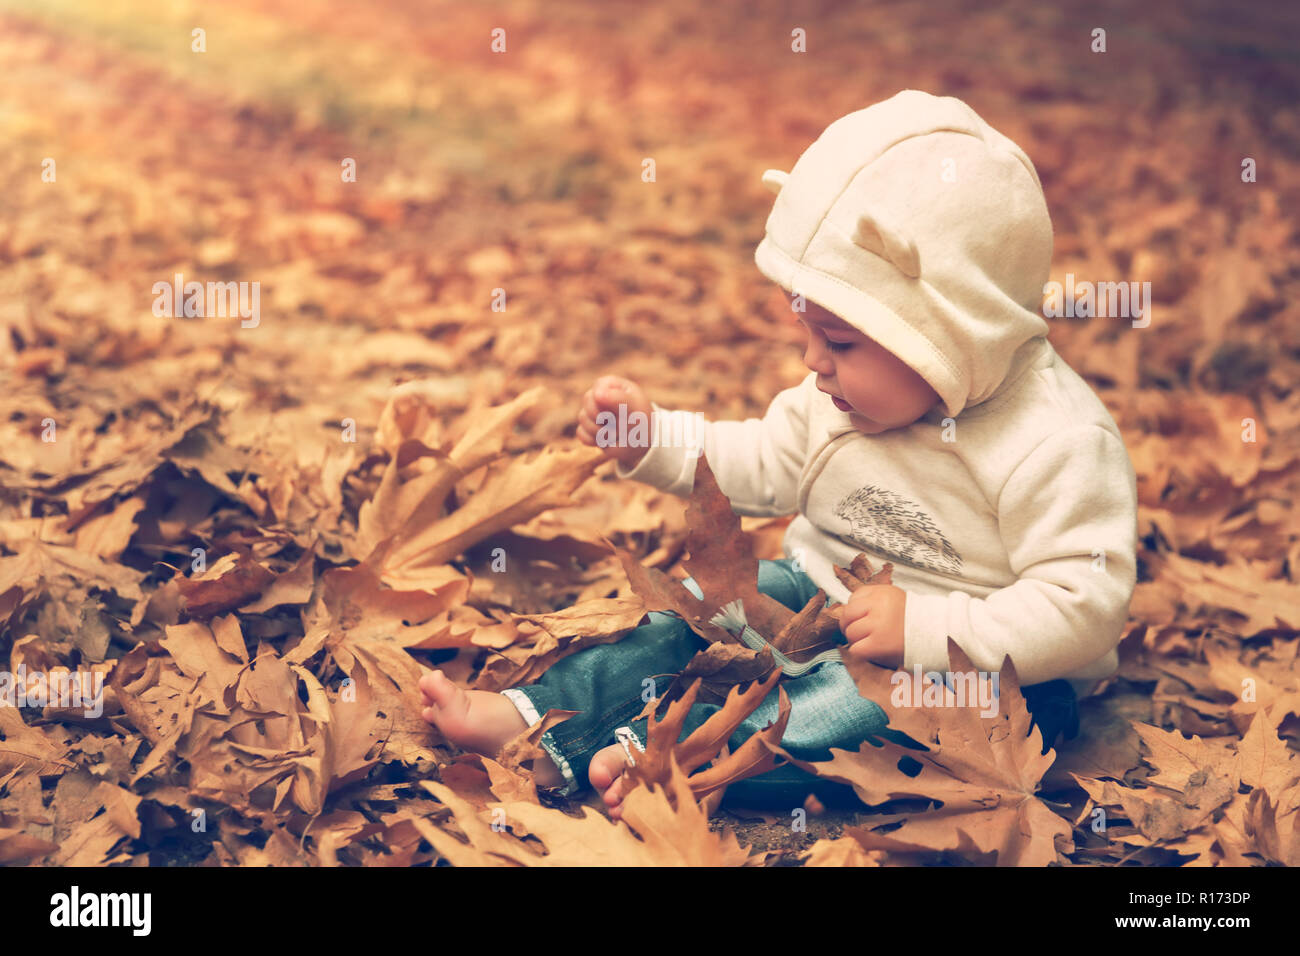 Süßes Kind Spaß im Wald, kleiner Junge sitzt auf dem Boden und mit Vergnügen spielen mit trockenen Baum Blätter, gerne Zeit im Freien Stockfoto